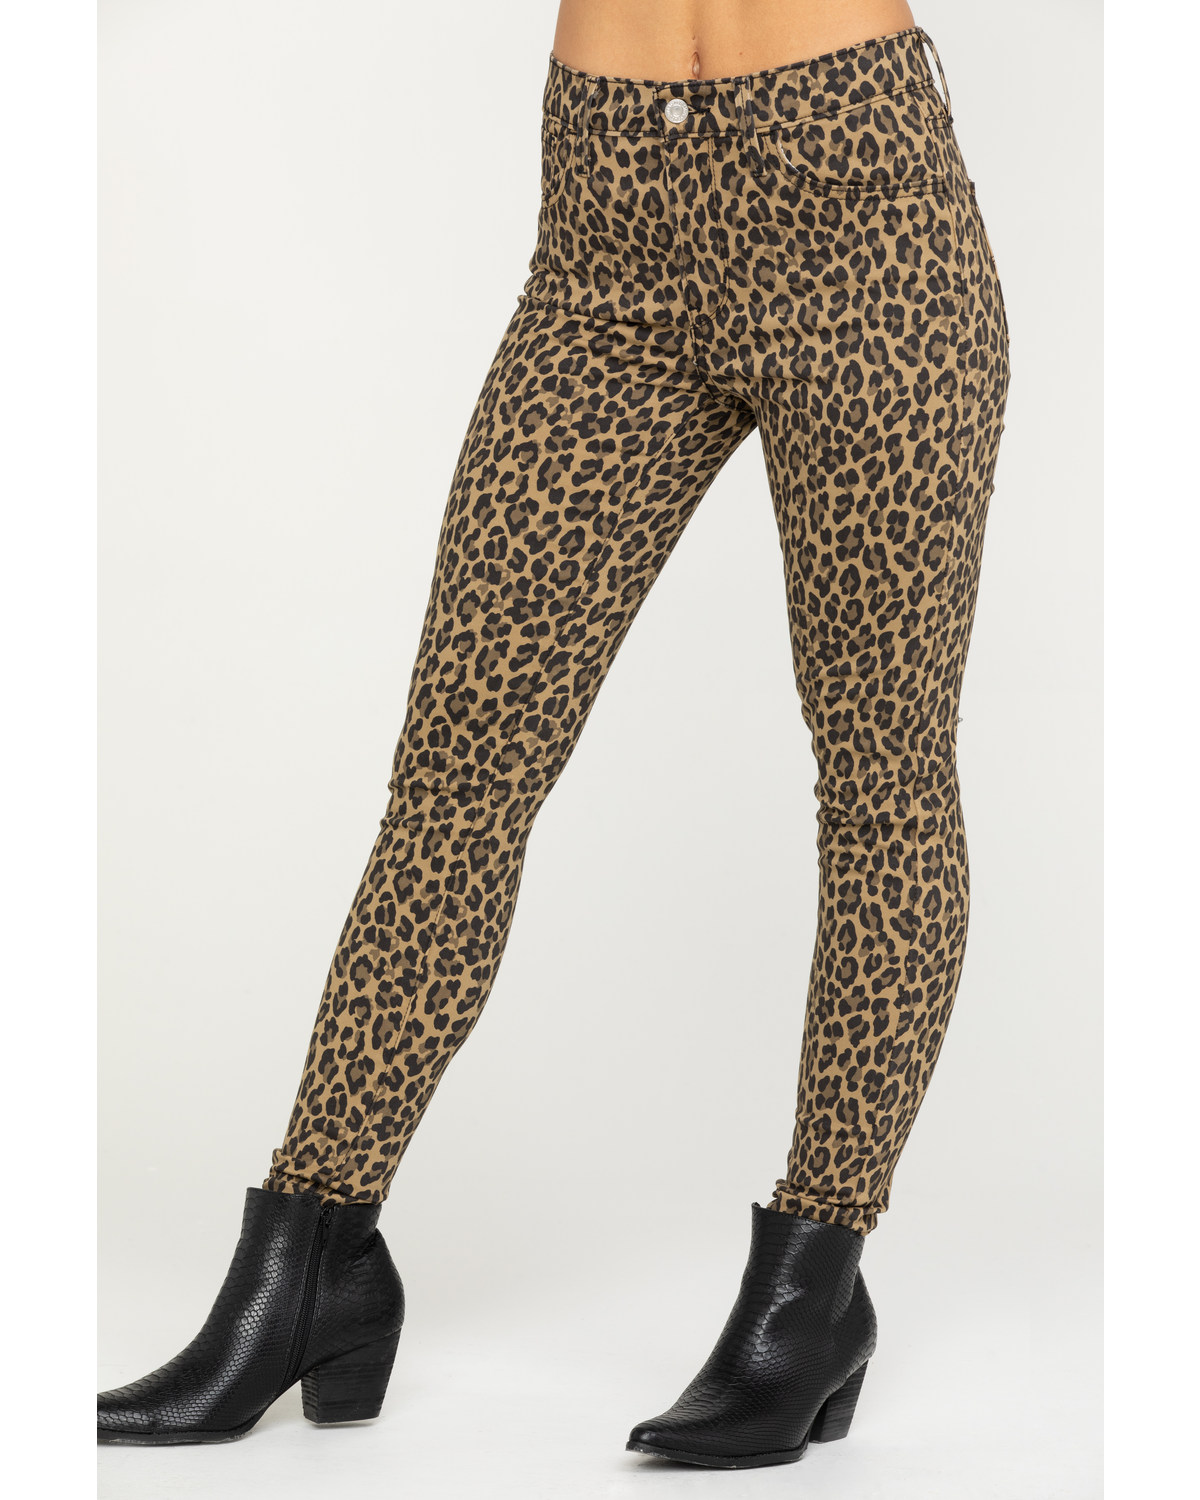 levi's leopard print jeans